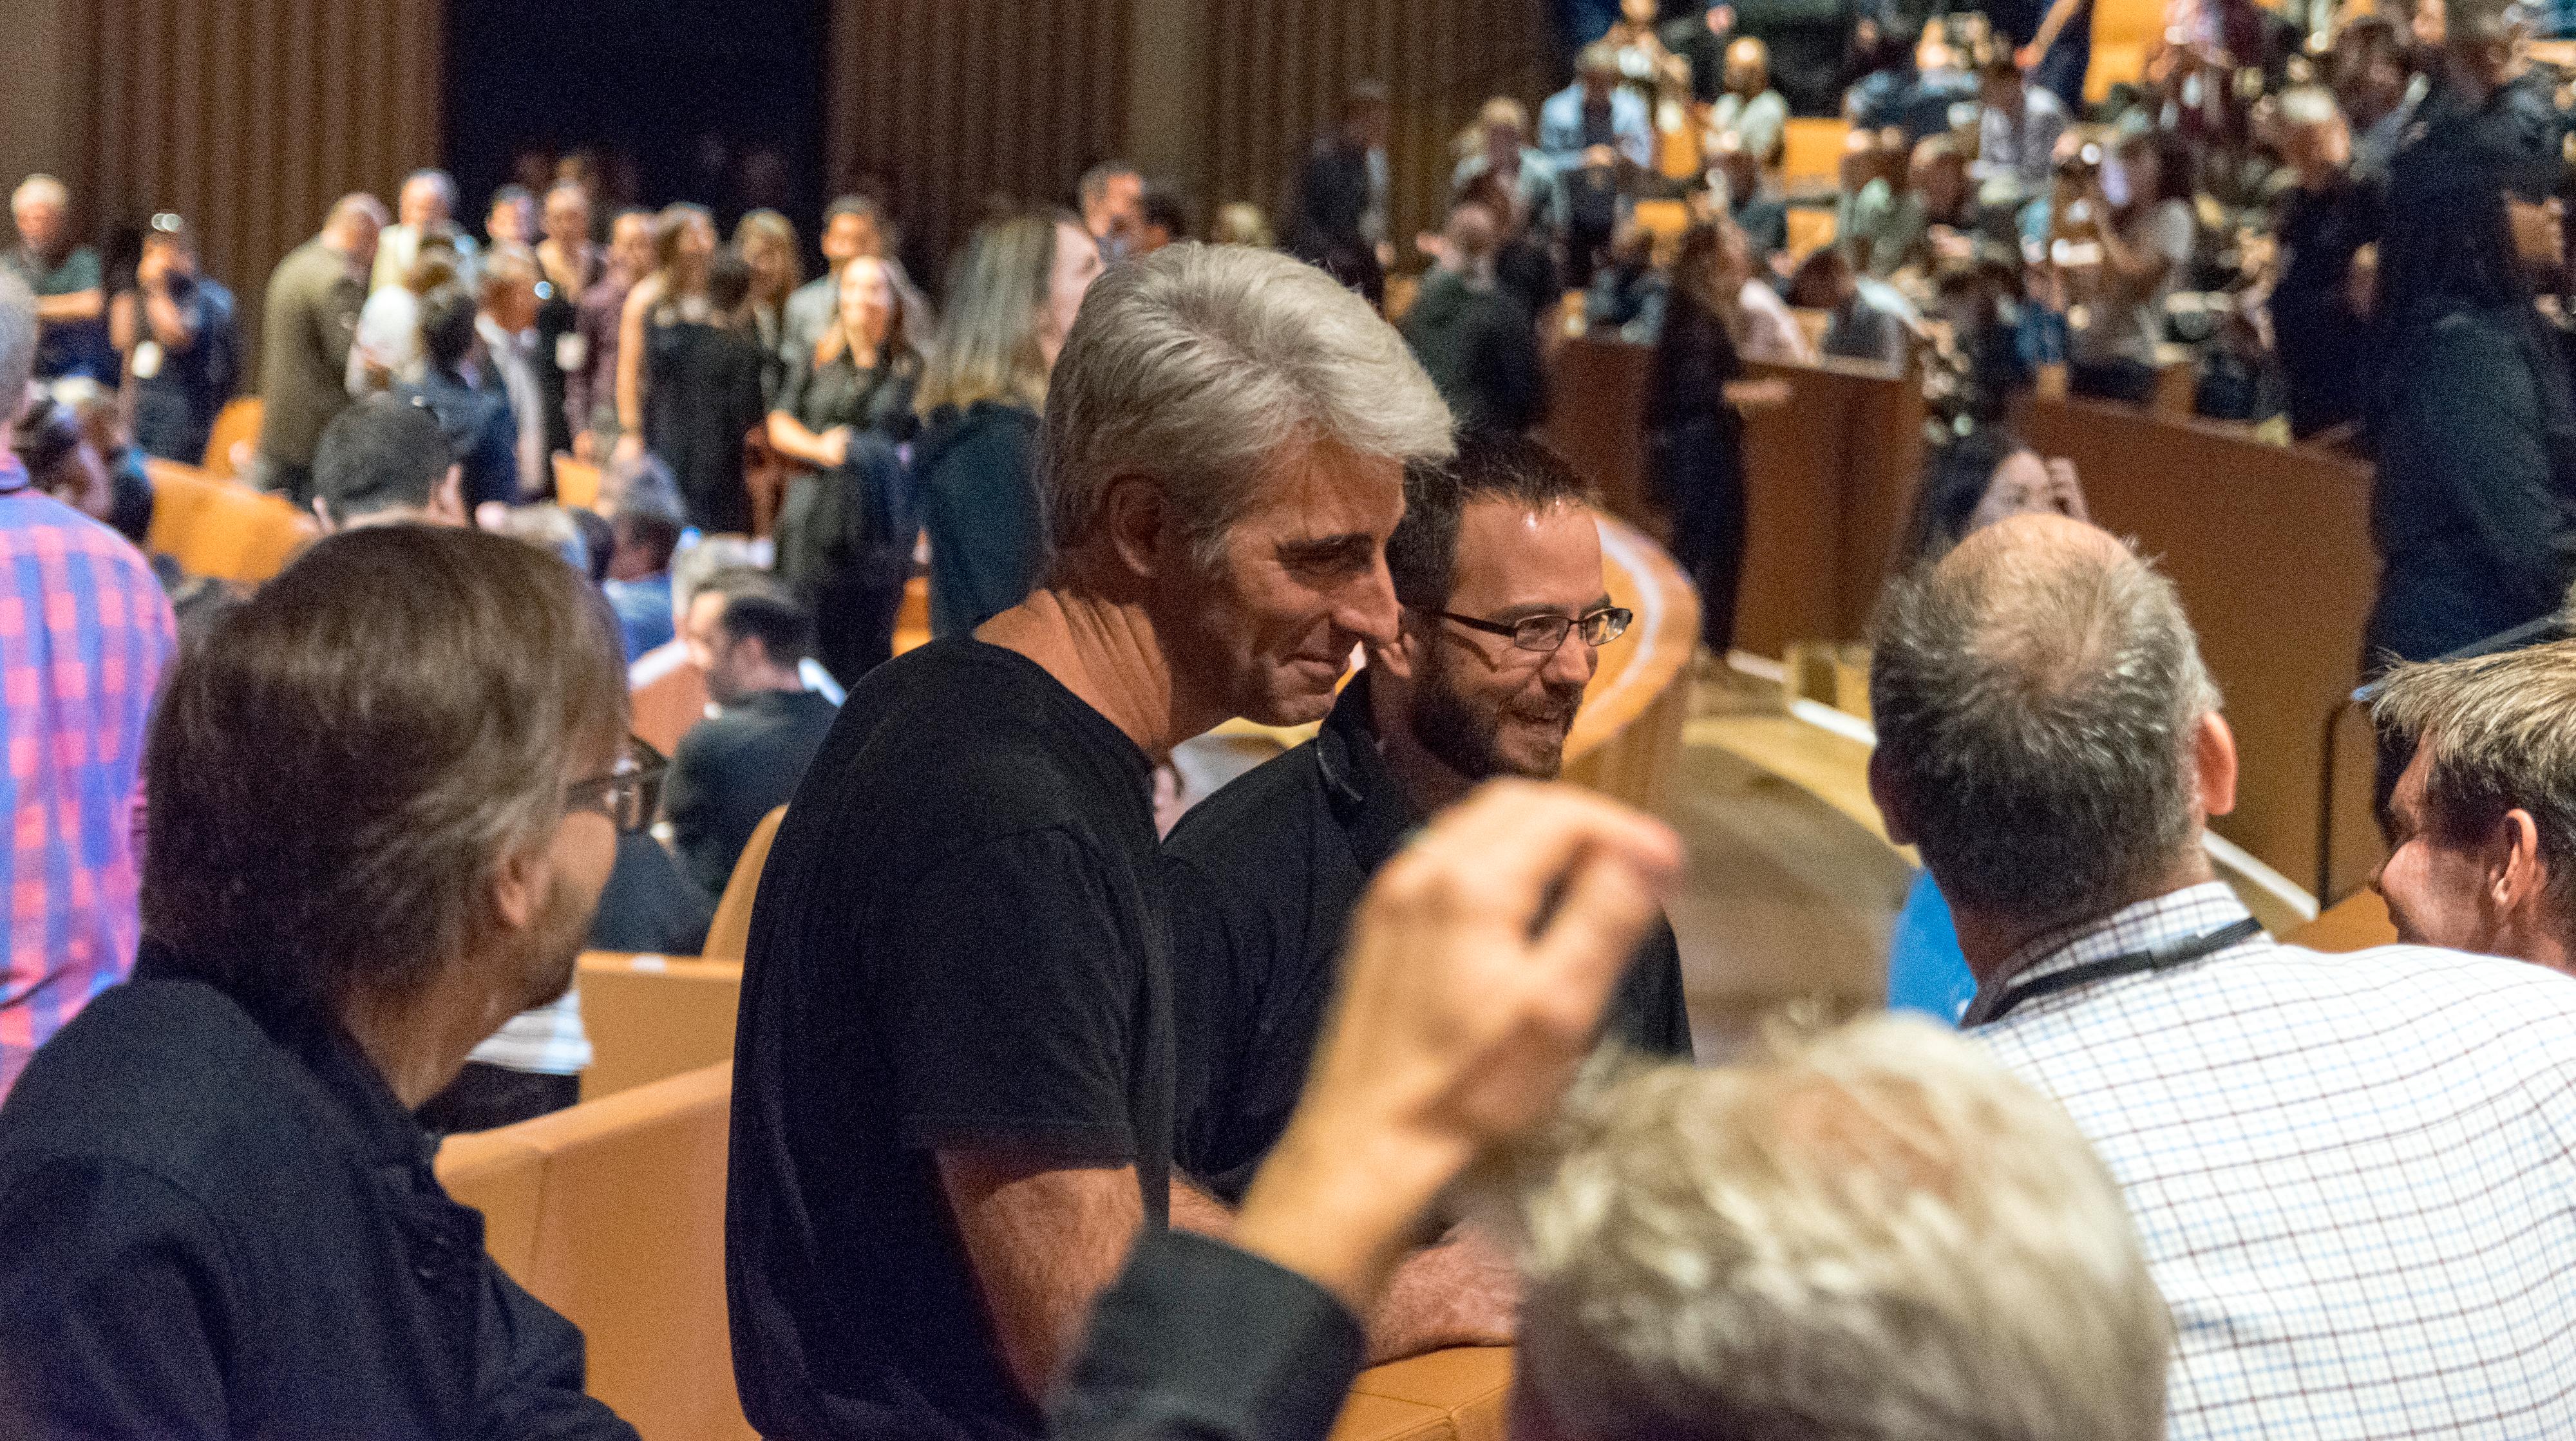 Apples Craig Federighi tok seg en tur ut for å hilse på presse og kolleger blant publikum..